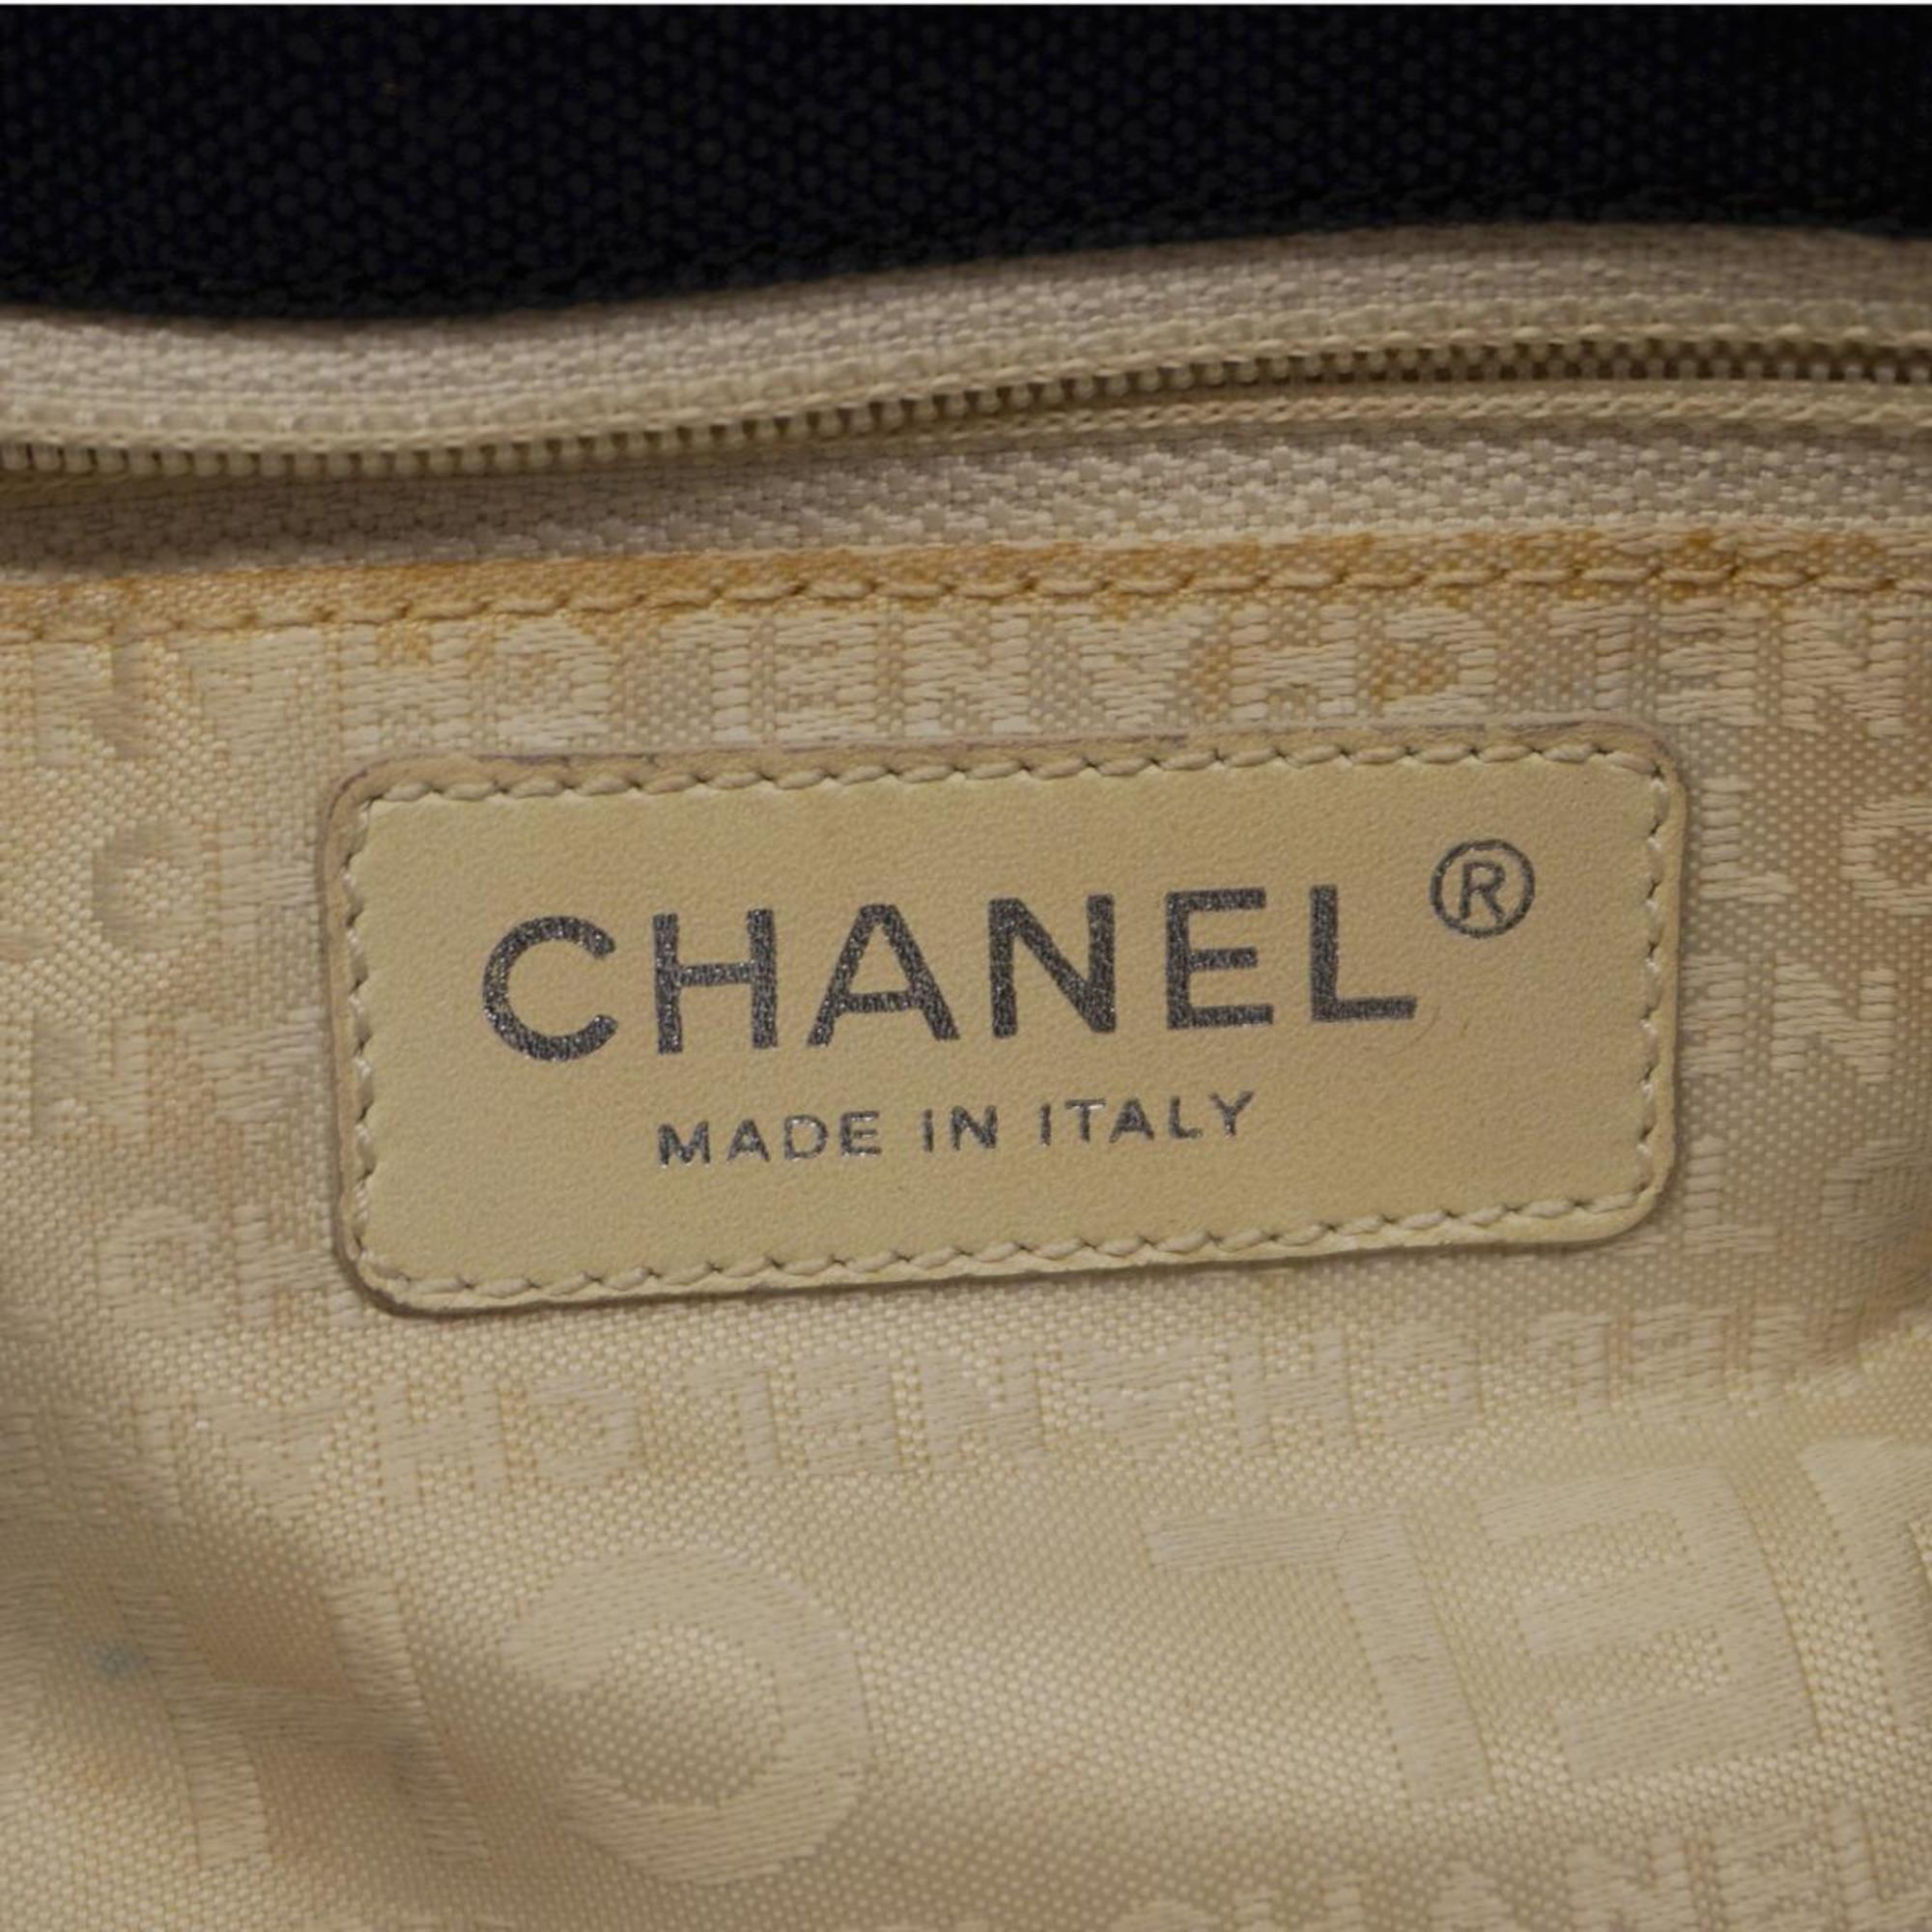 シャネル(Chanel) シャネル トートバッグ キャンバス ネイビー  レディース